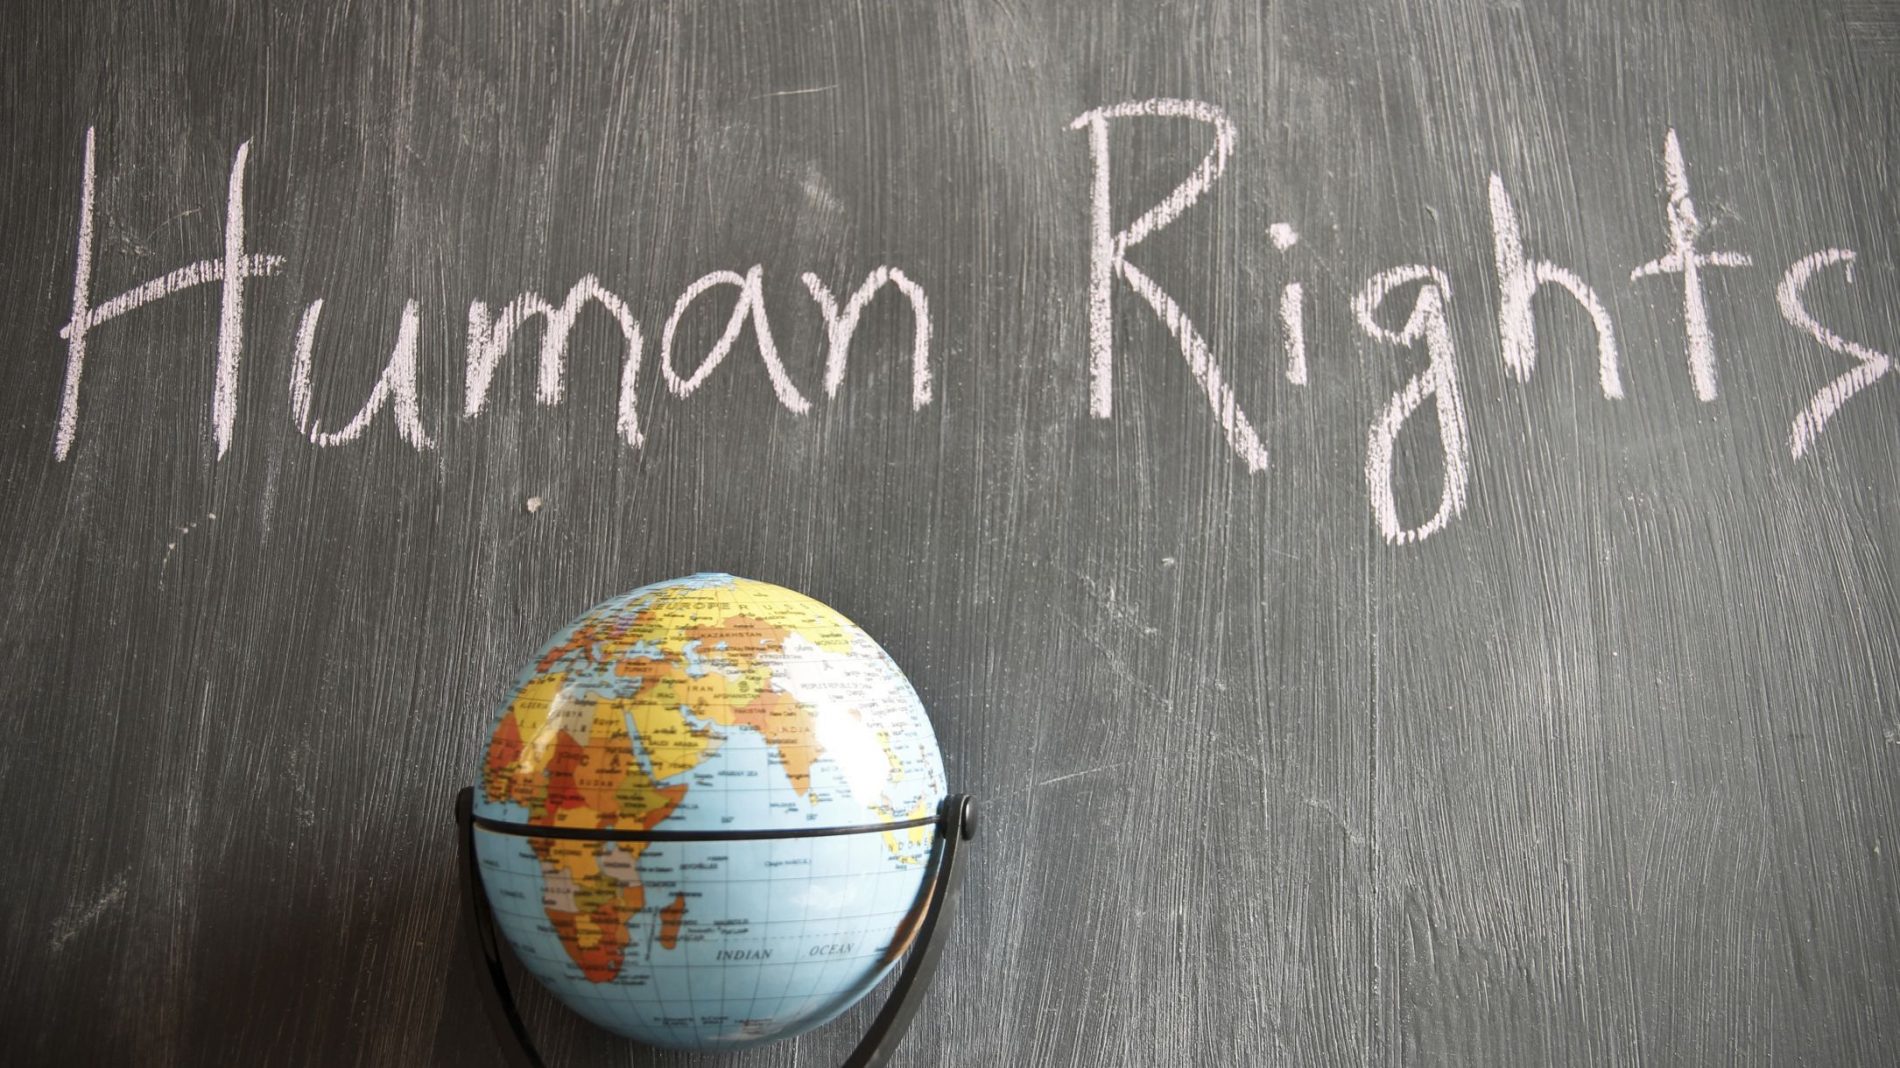 Human rights written on a chalkboard